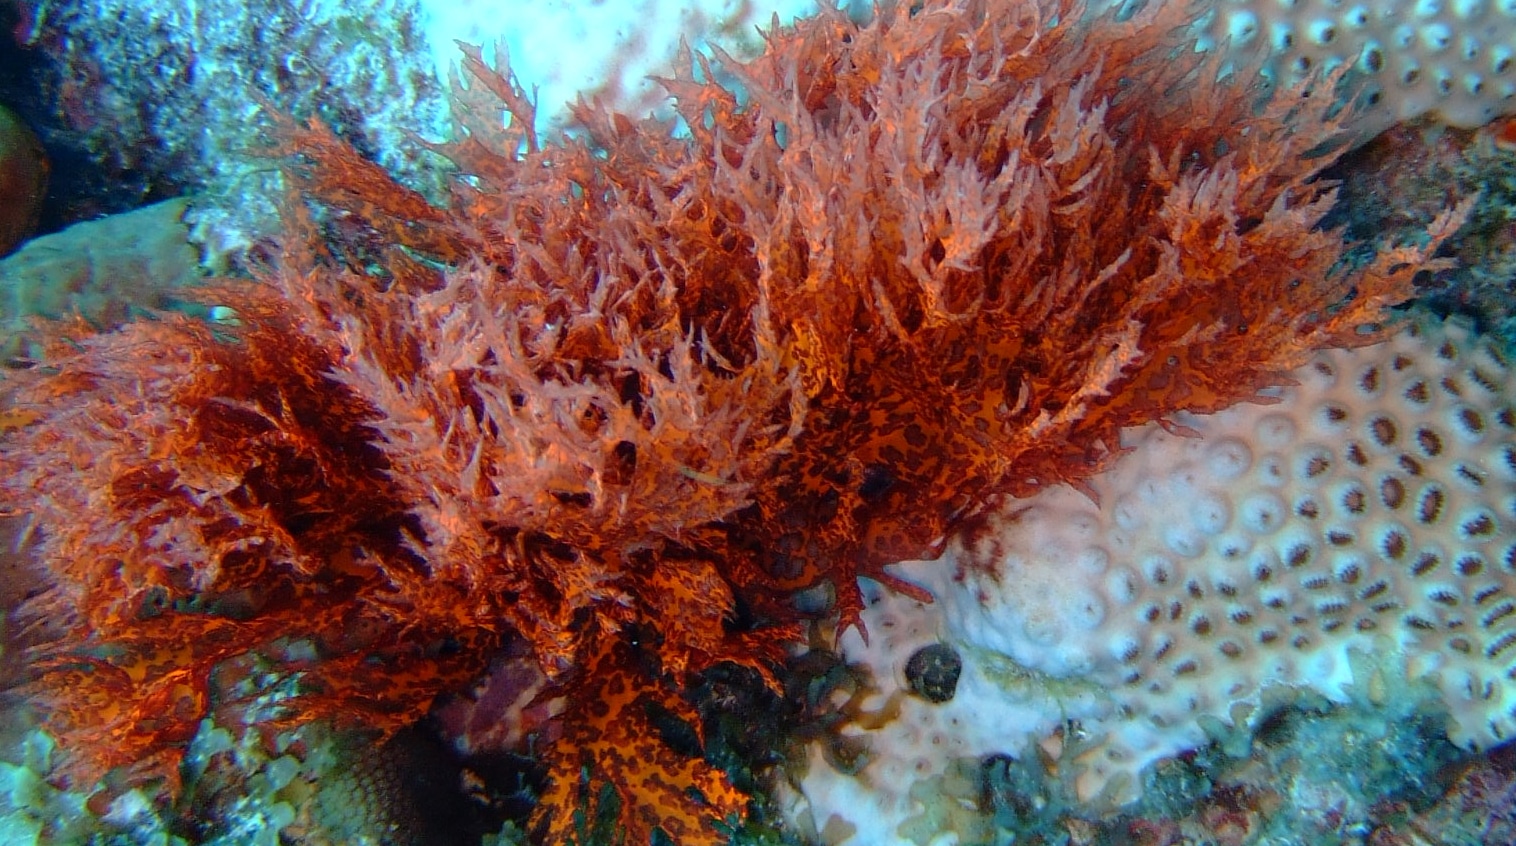 Røde alger er veldig karakteristiske